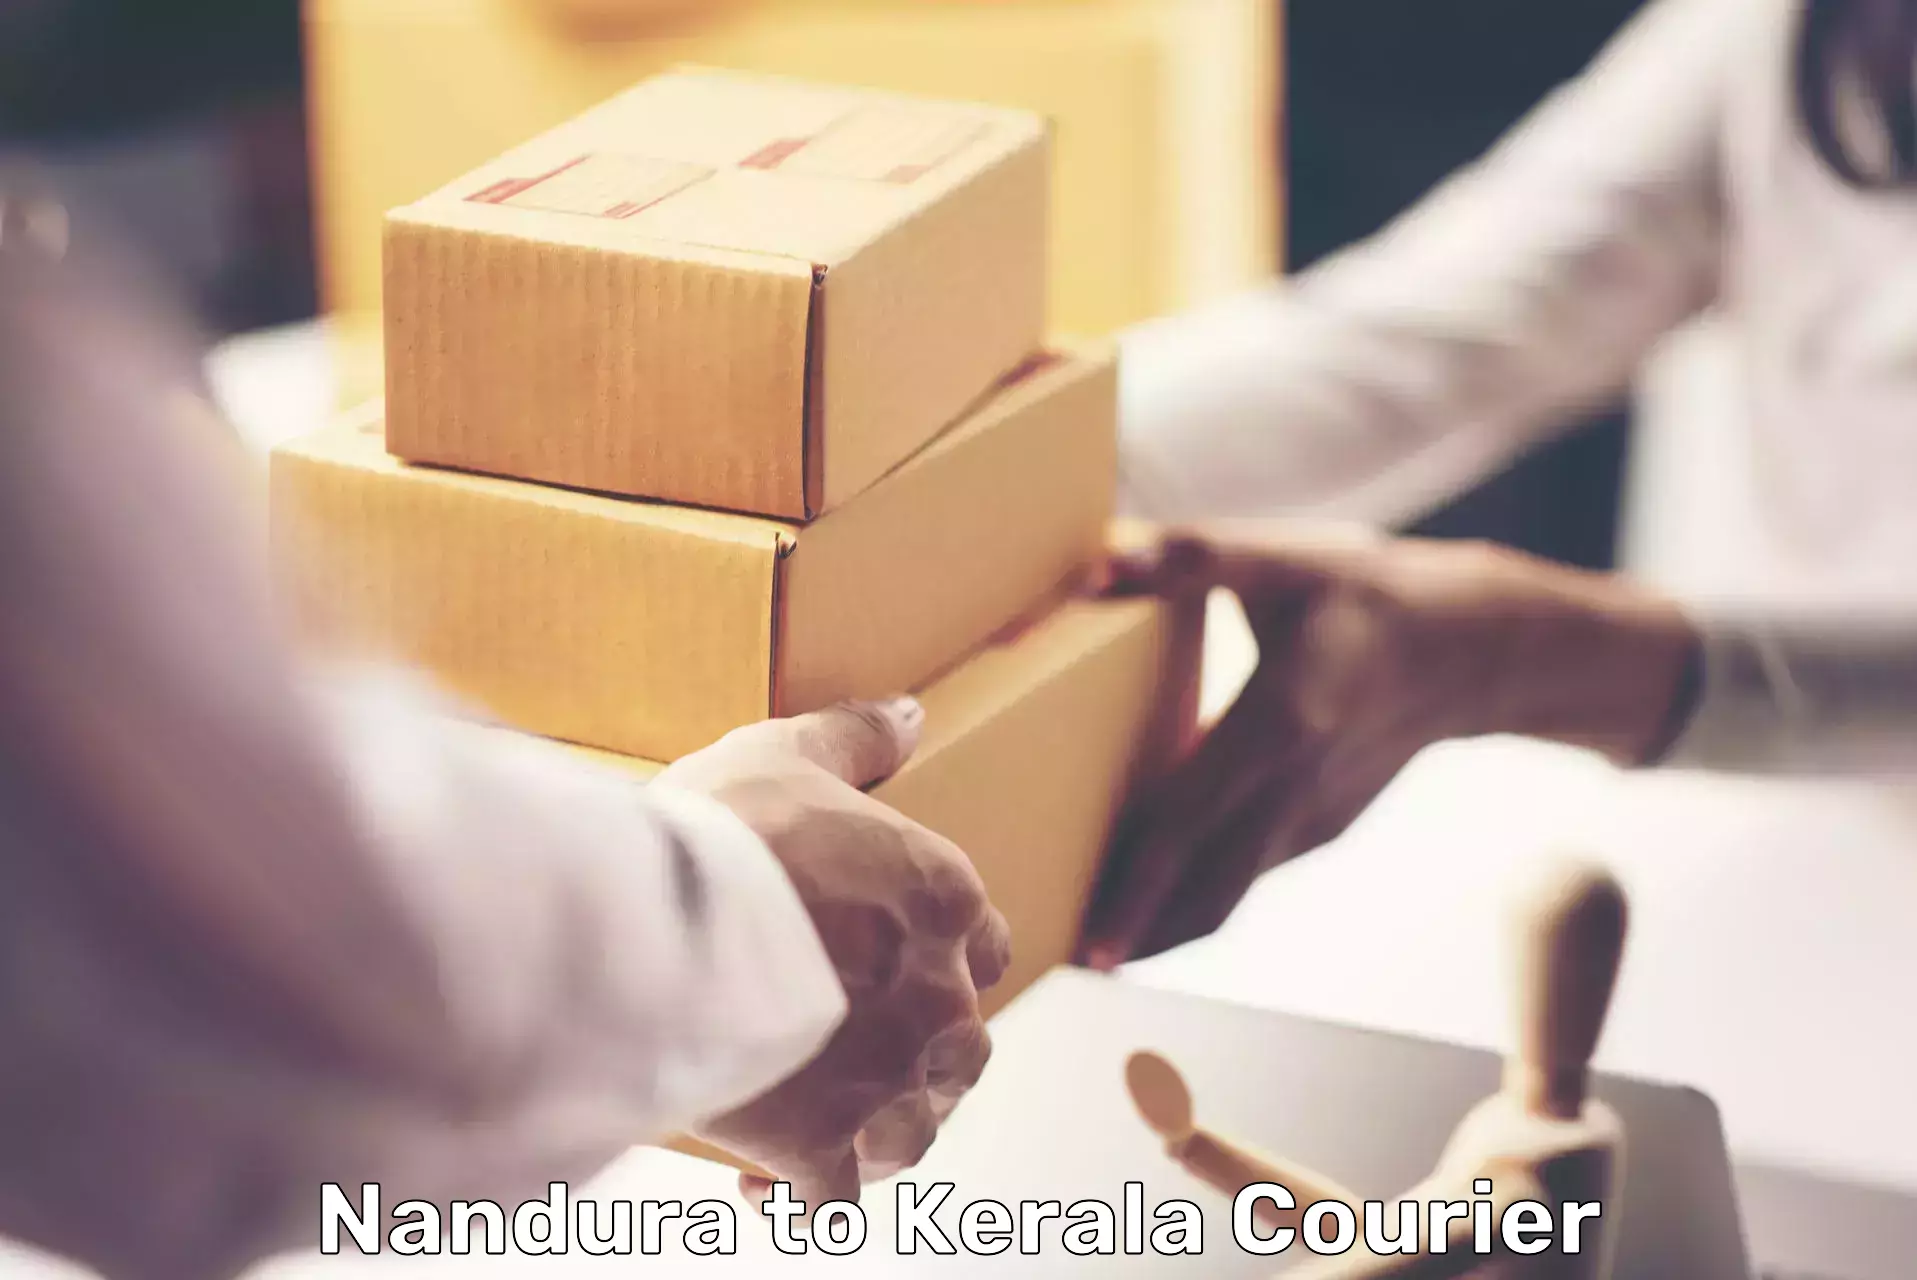 Individual parcel service Nandura to Kerala